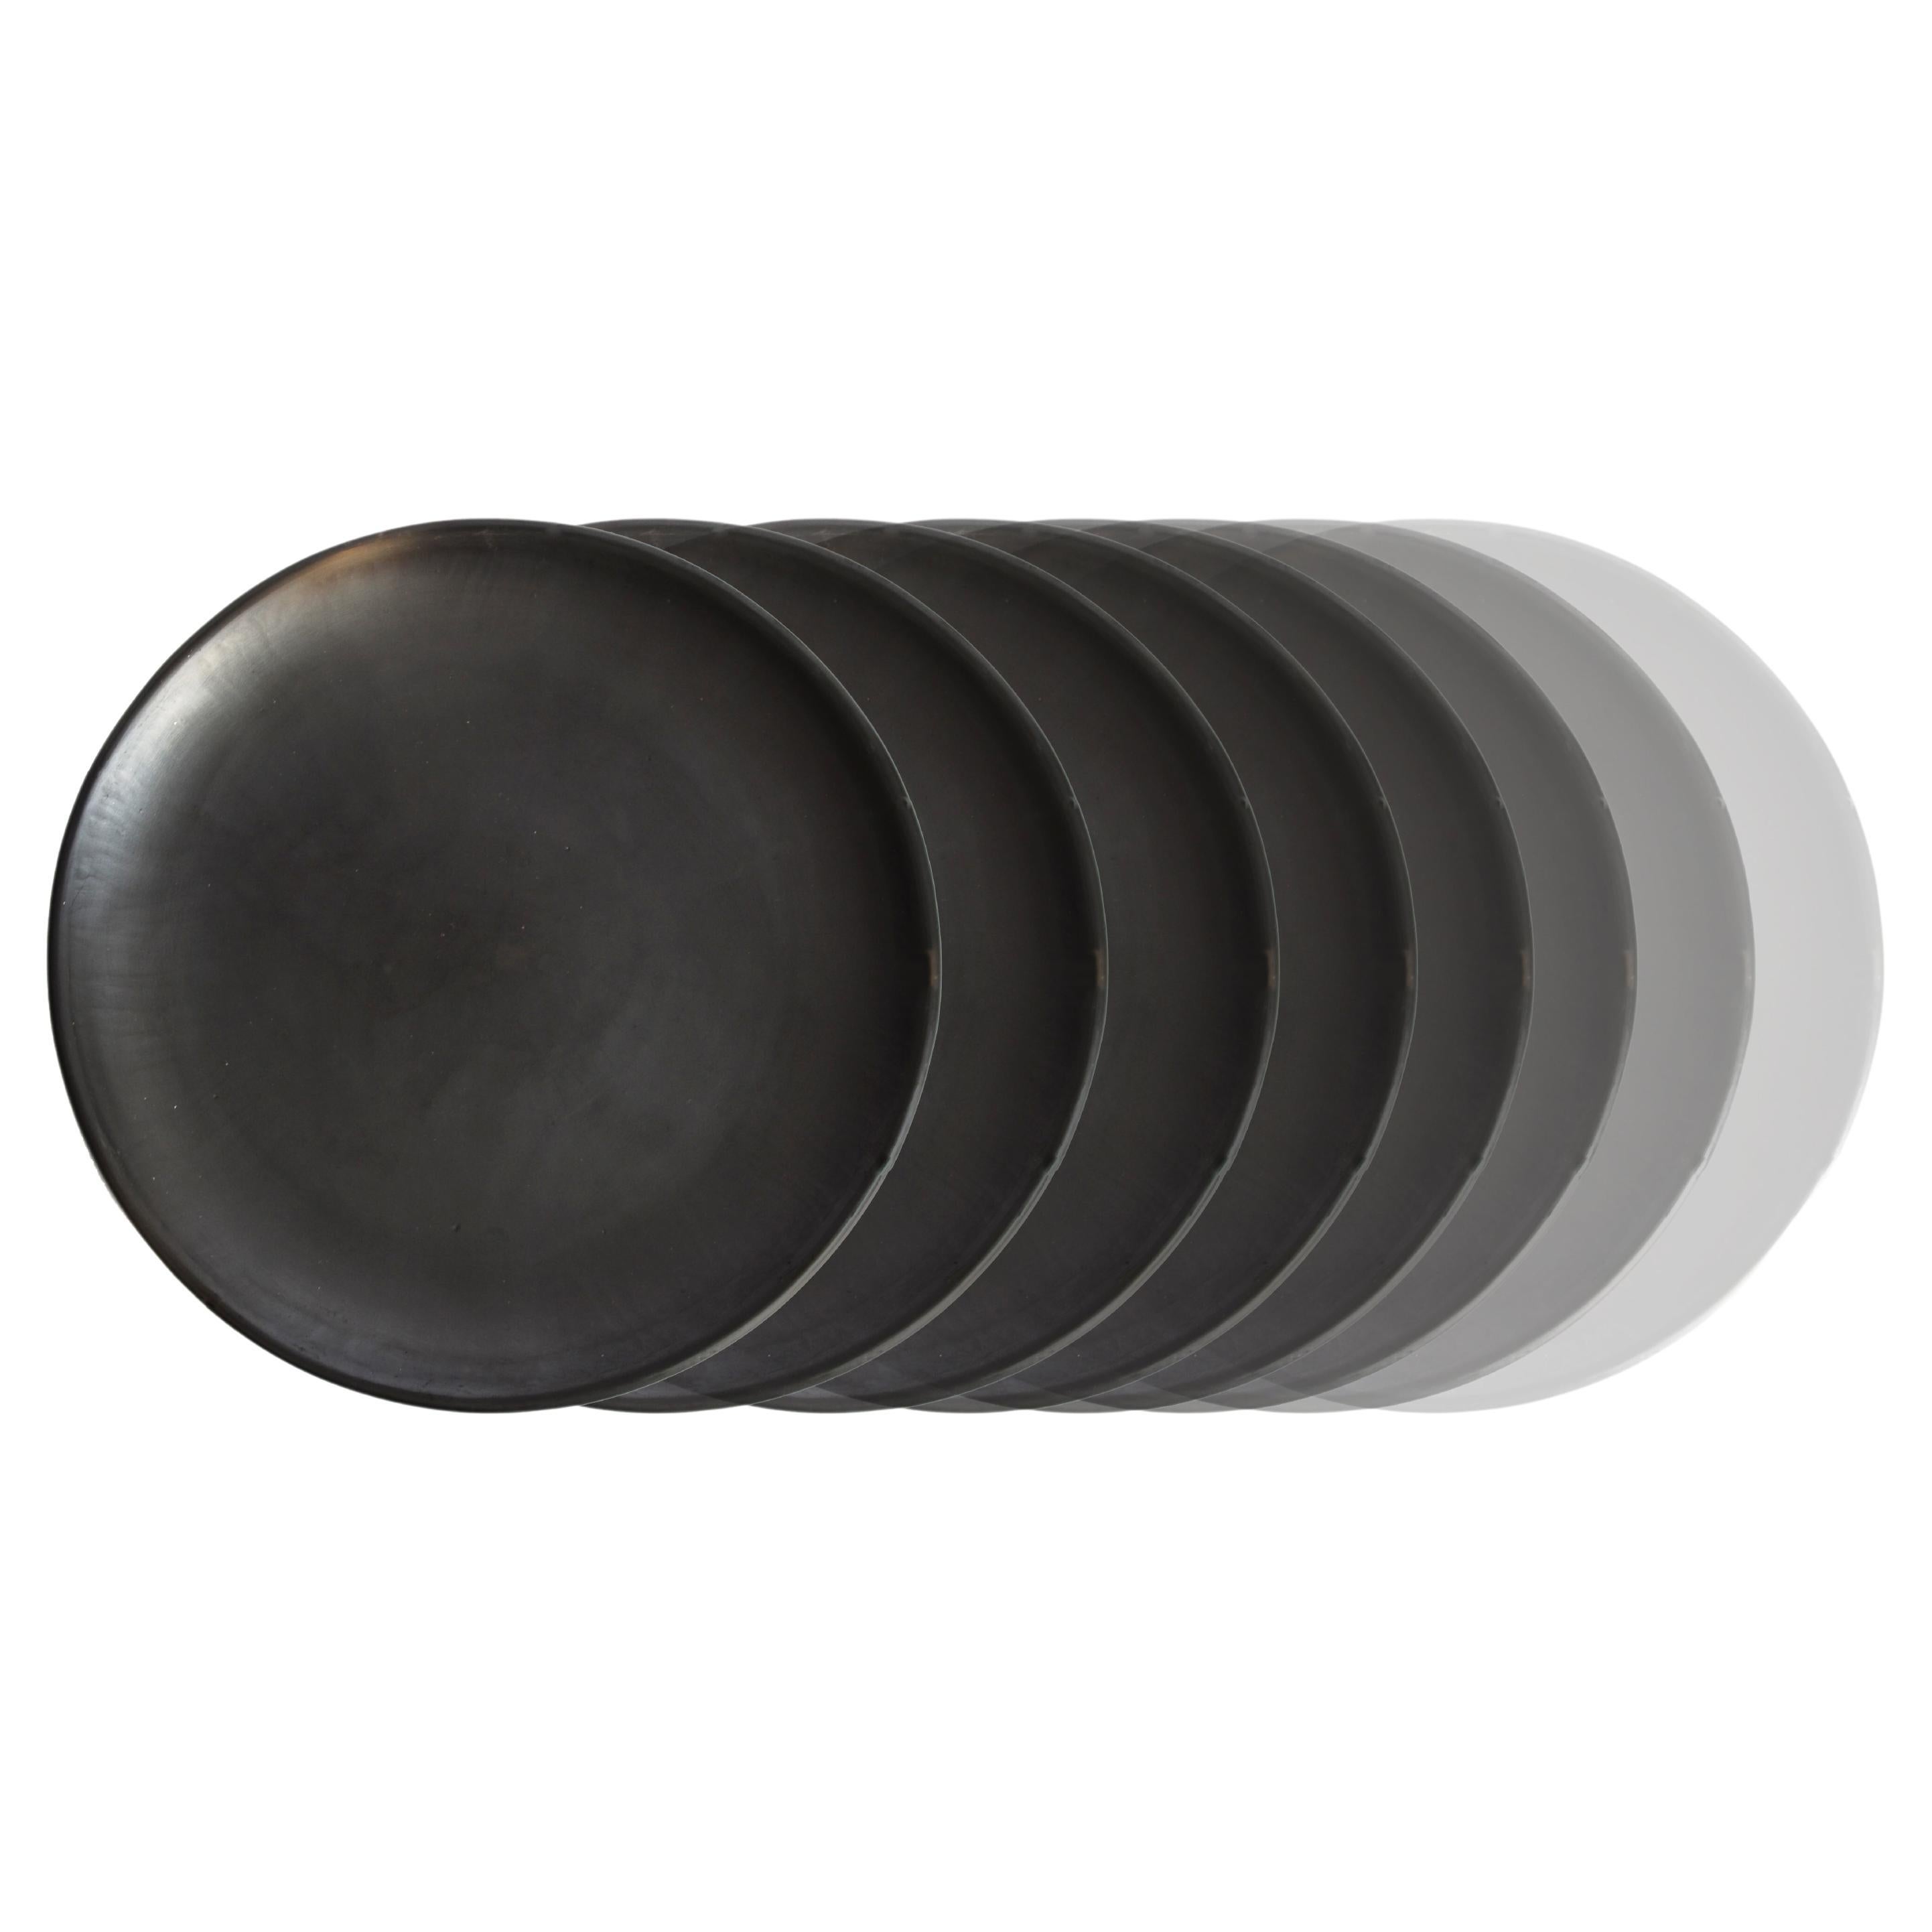 8 assiettes en argile noire d'Oaxacan de 15 cm, faites à la main, bruni Barro Oaxaca